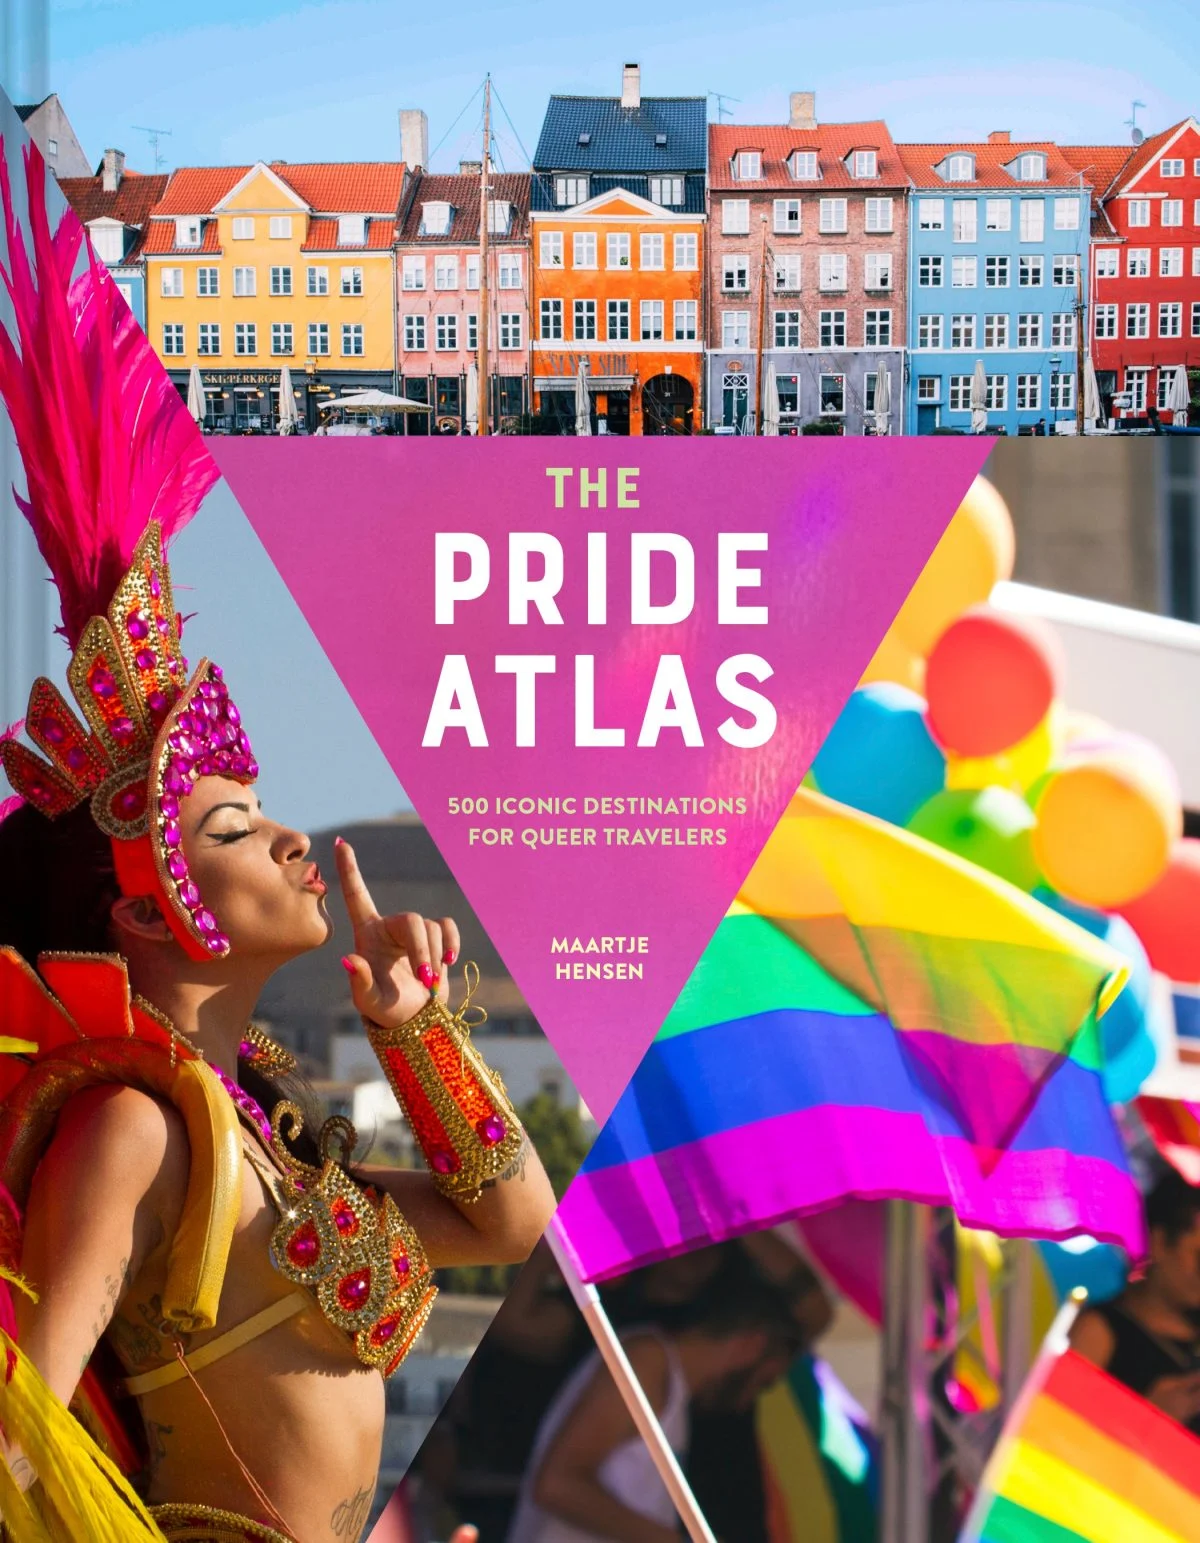 The Pride Atlas queer travel book by maartje hensen